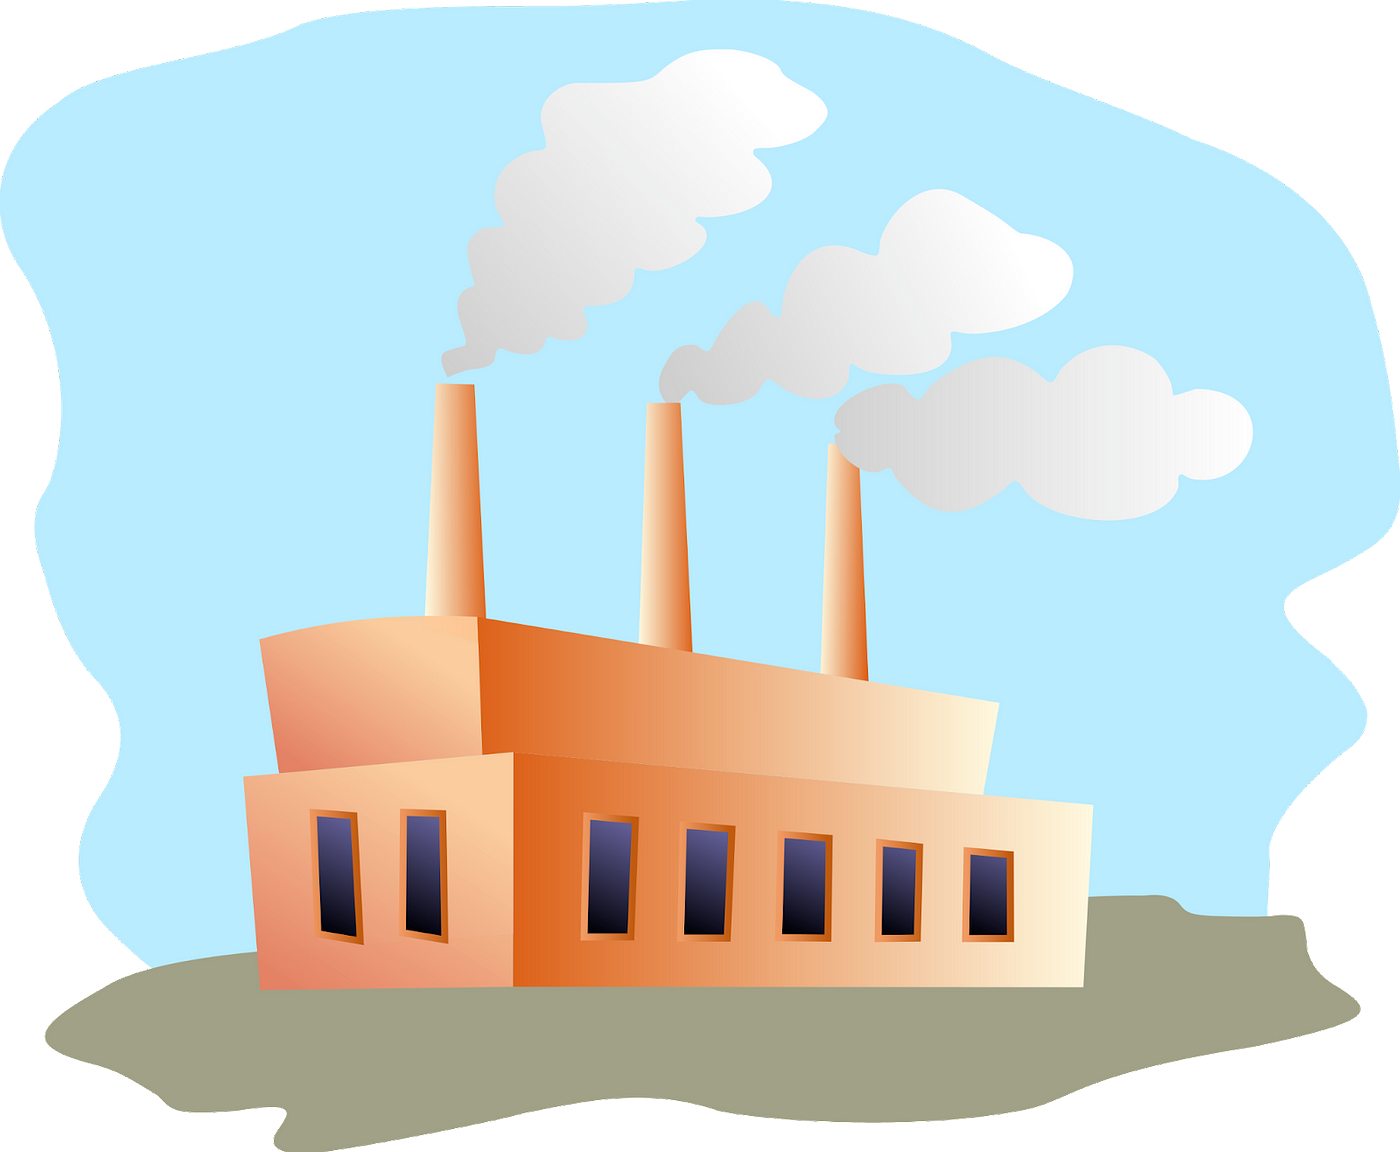 An Actual Factory